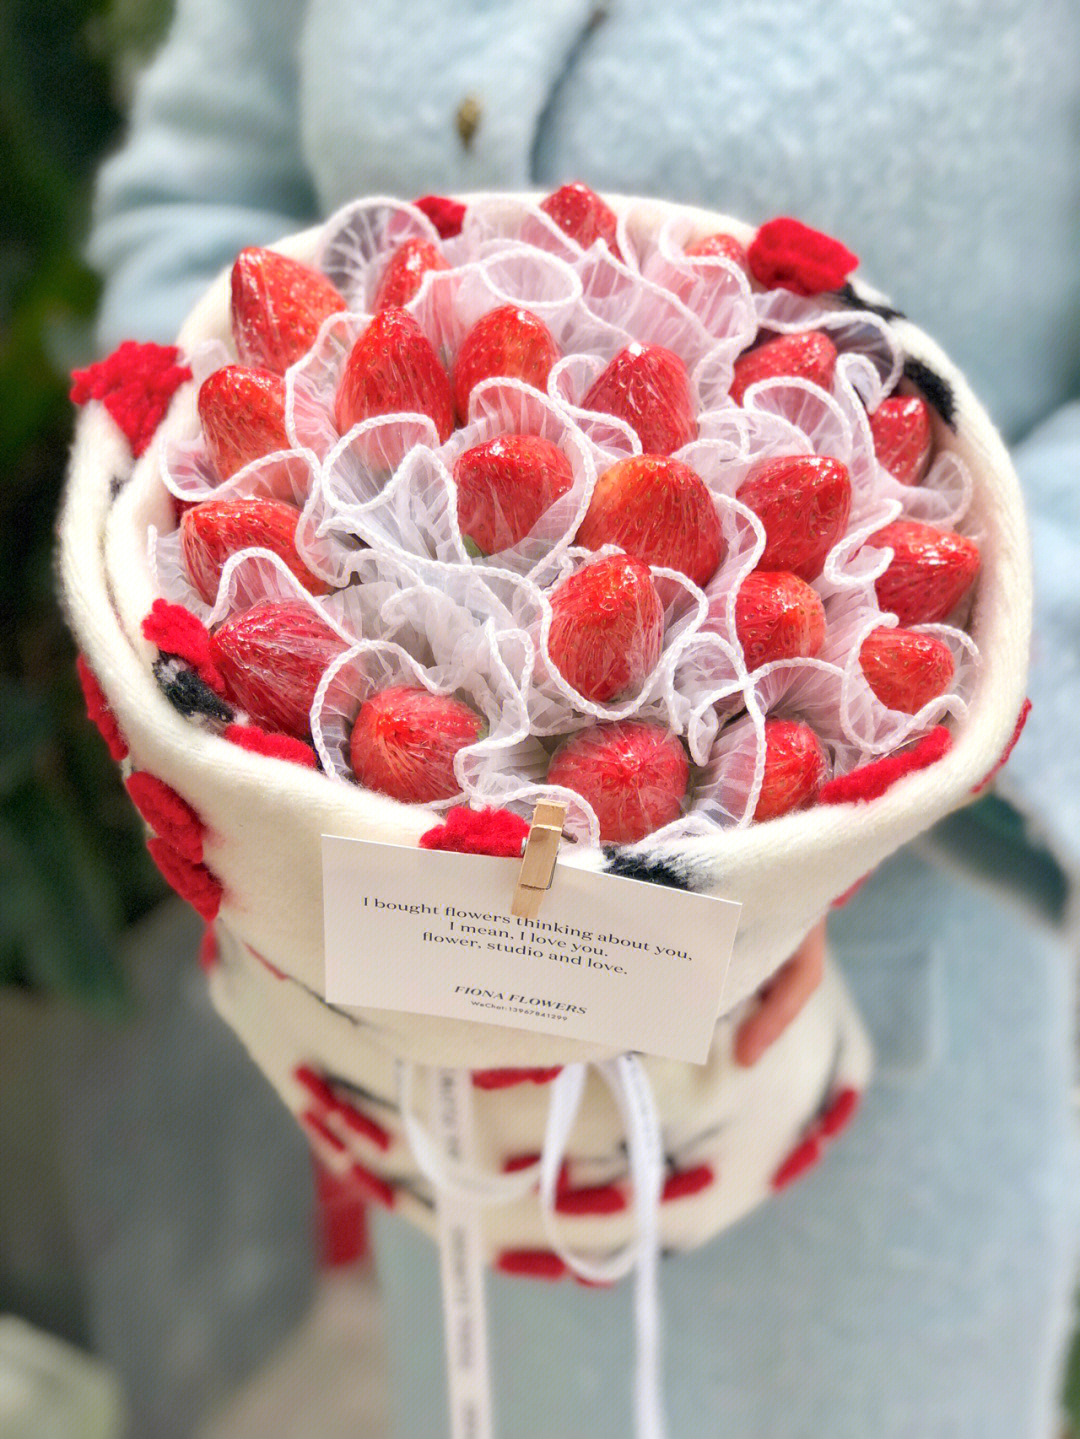 送草莓花束的贺卡内容图片